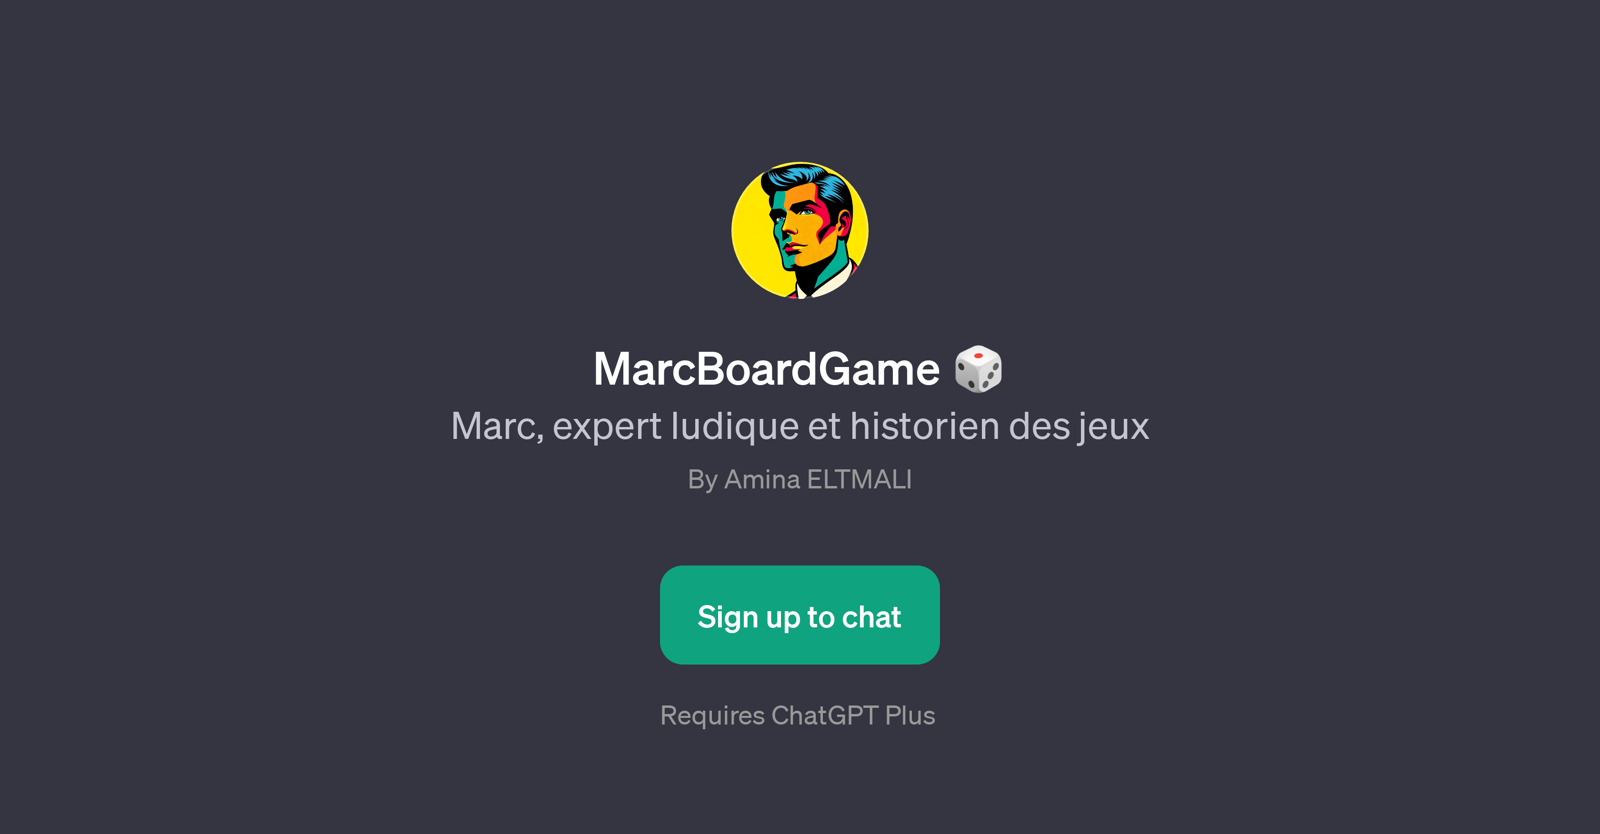 MarcBoardGame website